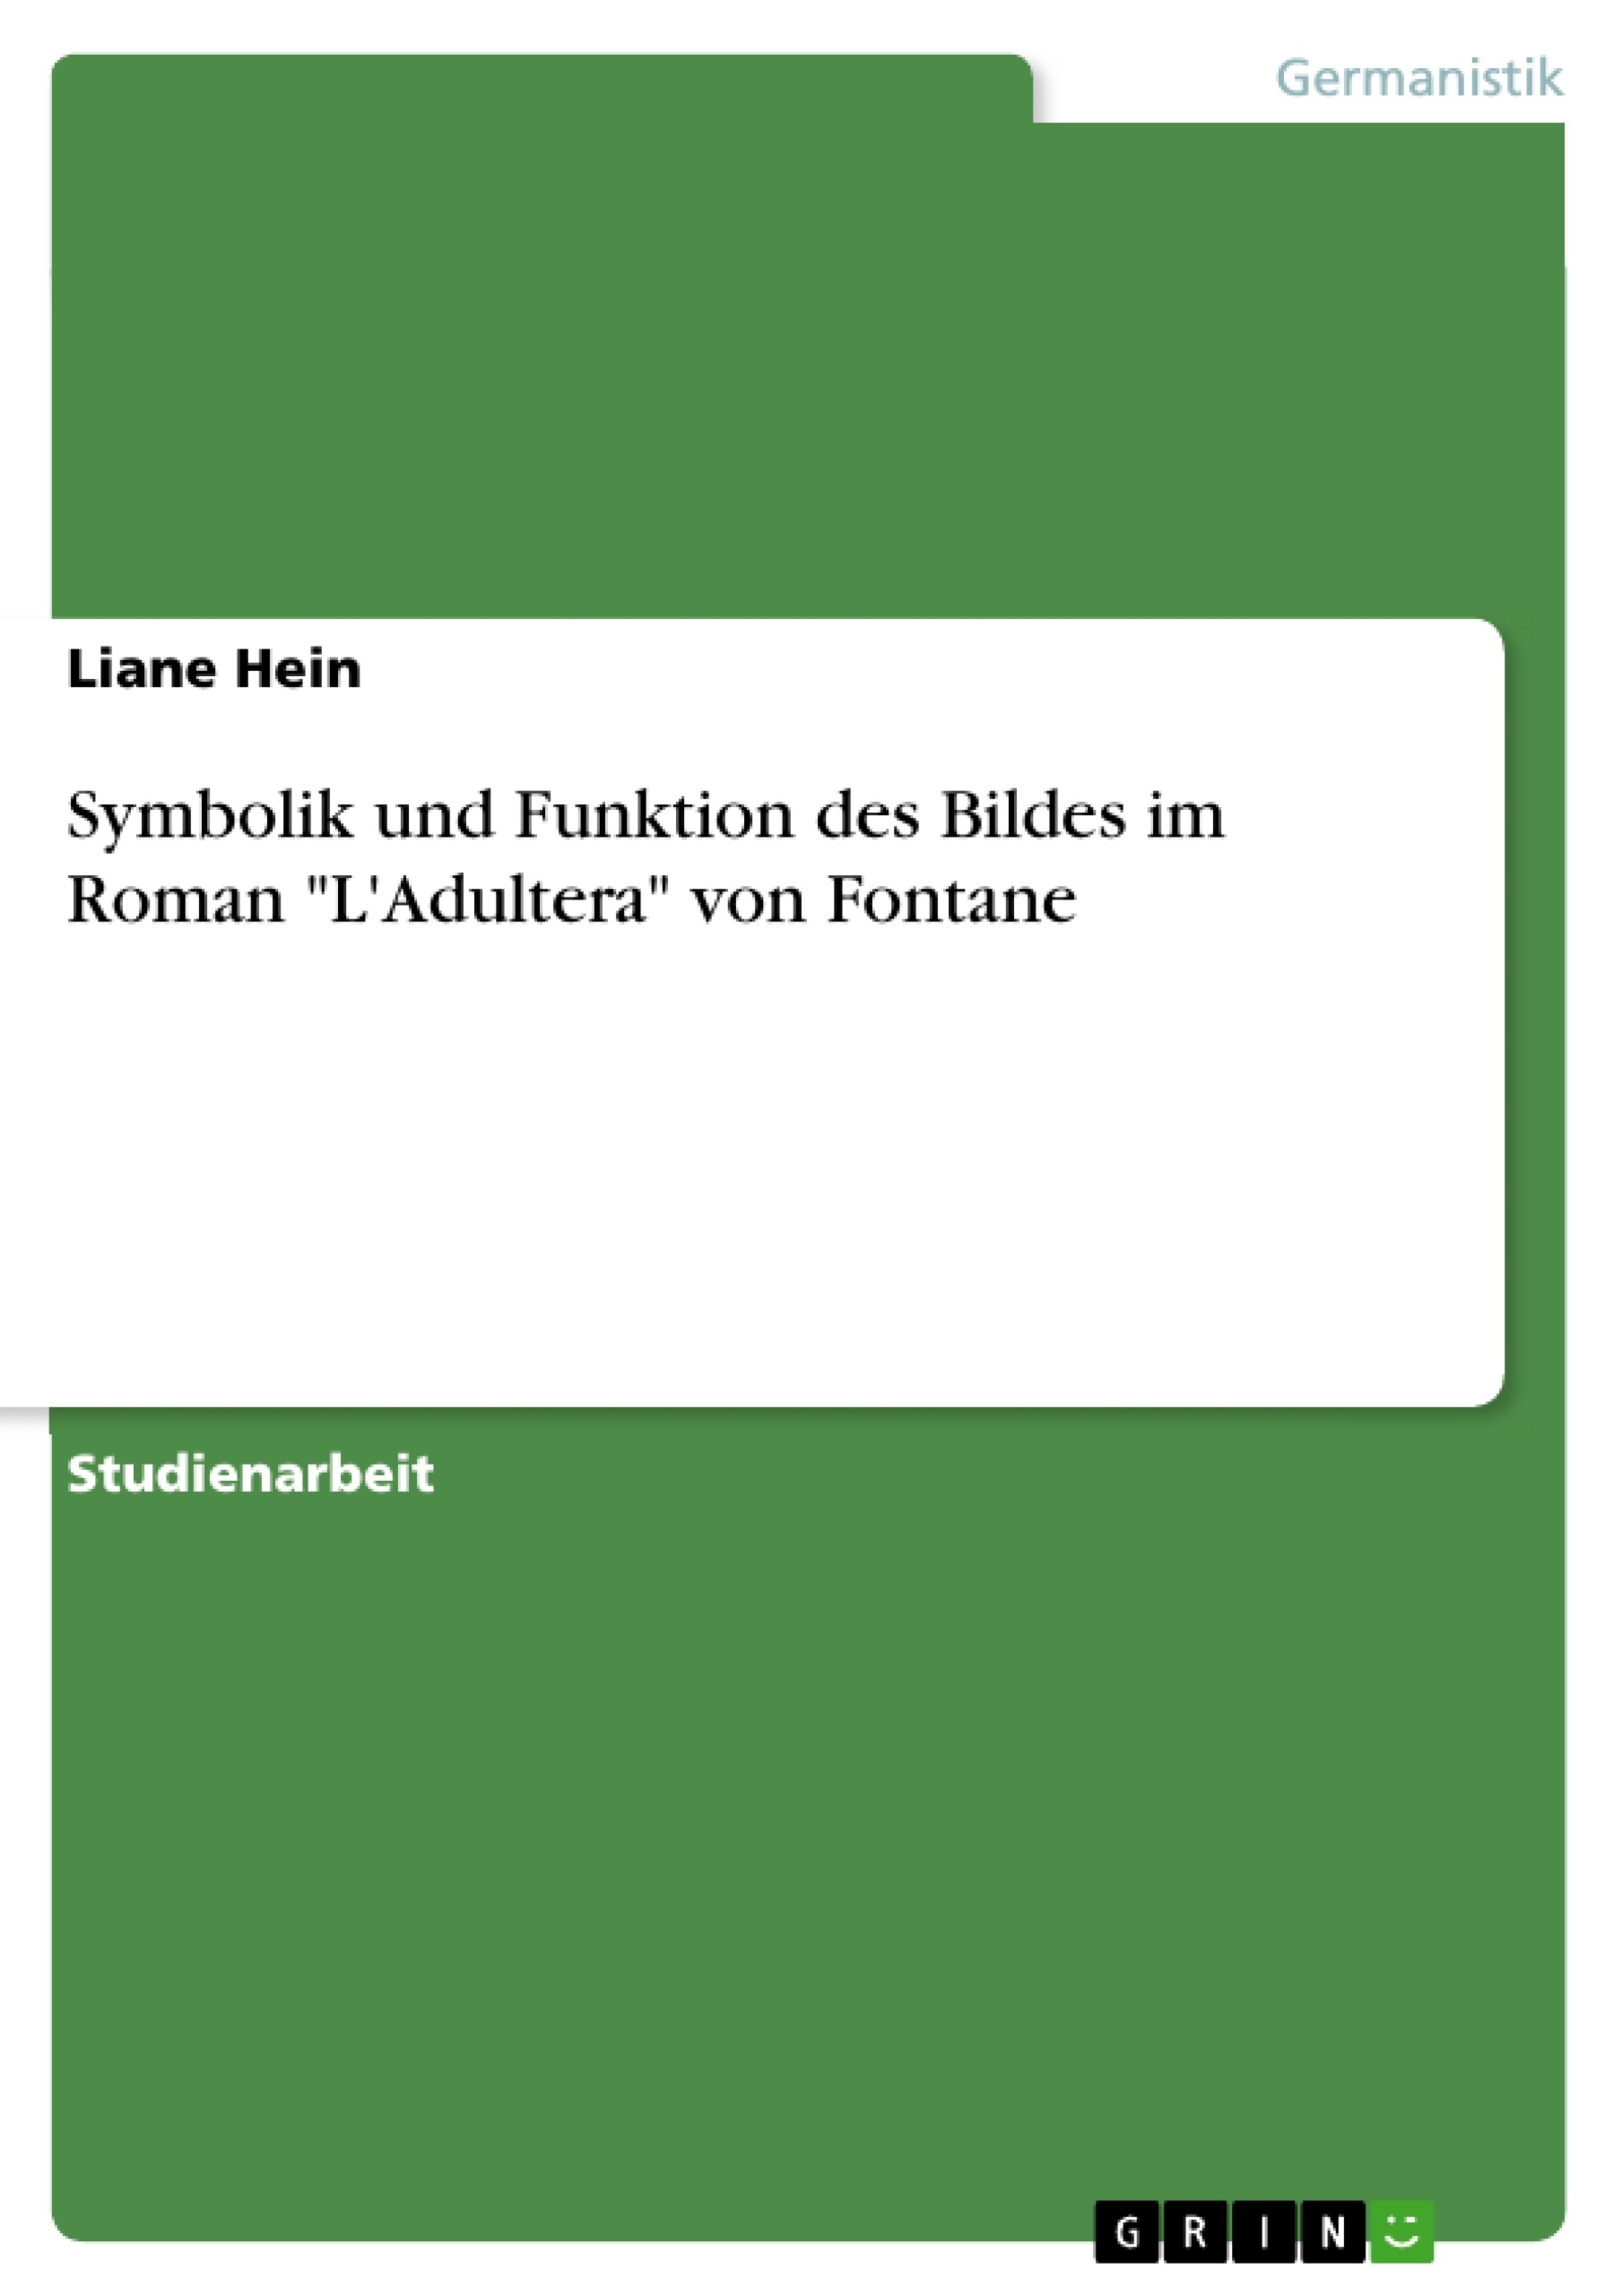 Title: Symbolik und Funktion des Bildes im Roman "L'Adultera" von Fontane